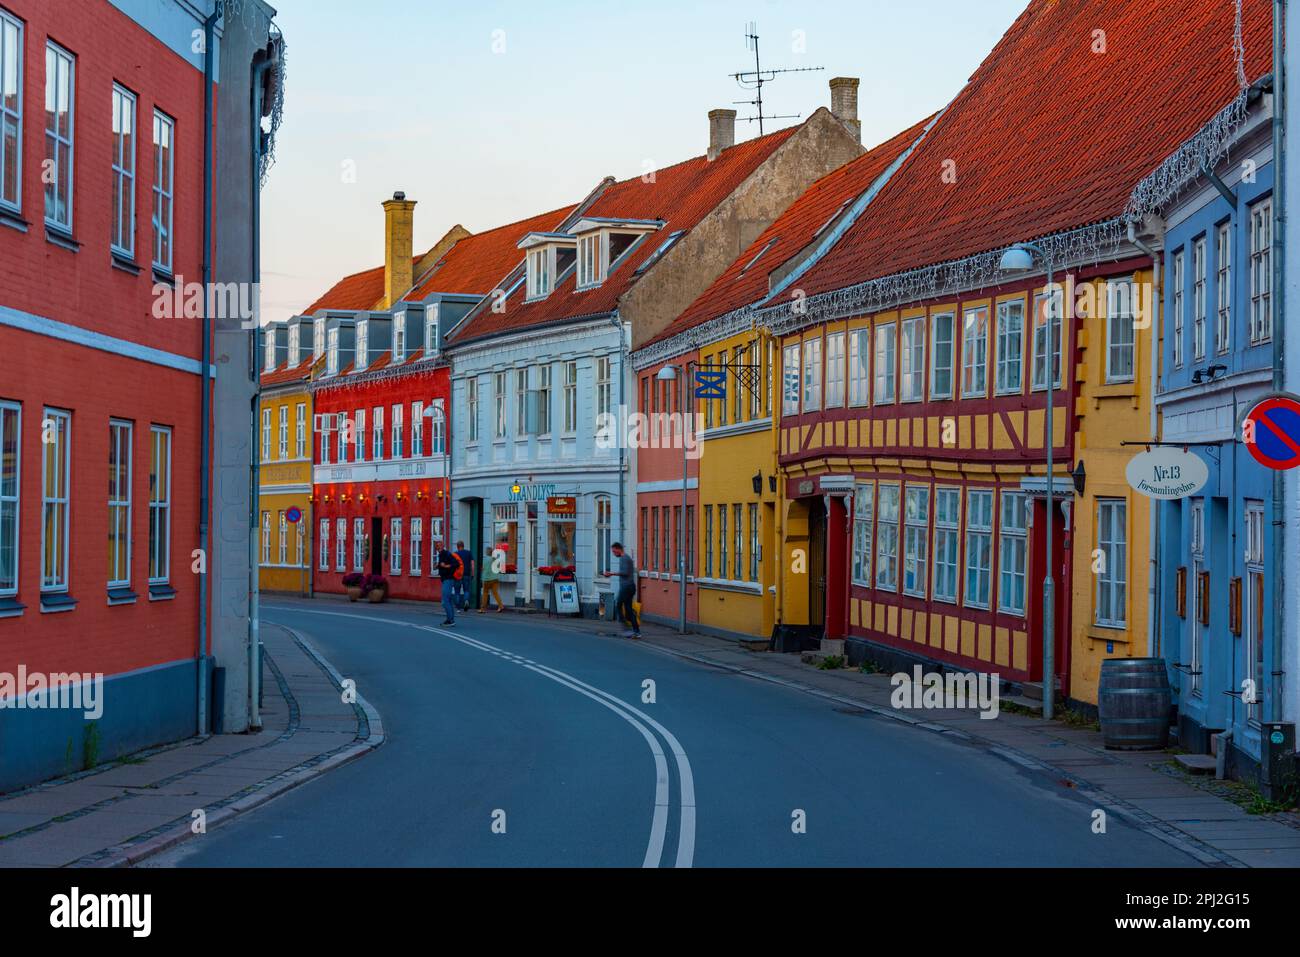 Svendborg, Denmark, June 20, 2022: Sunset view of a street in center of Svendborg, Denmark. Stock Photo